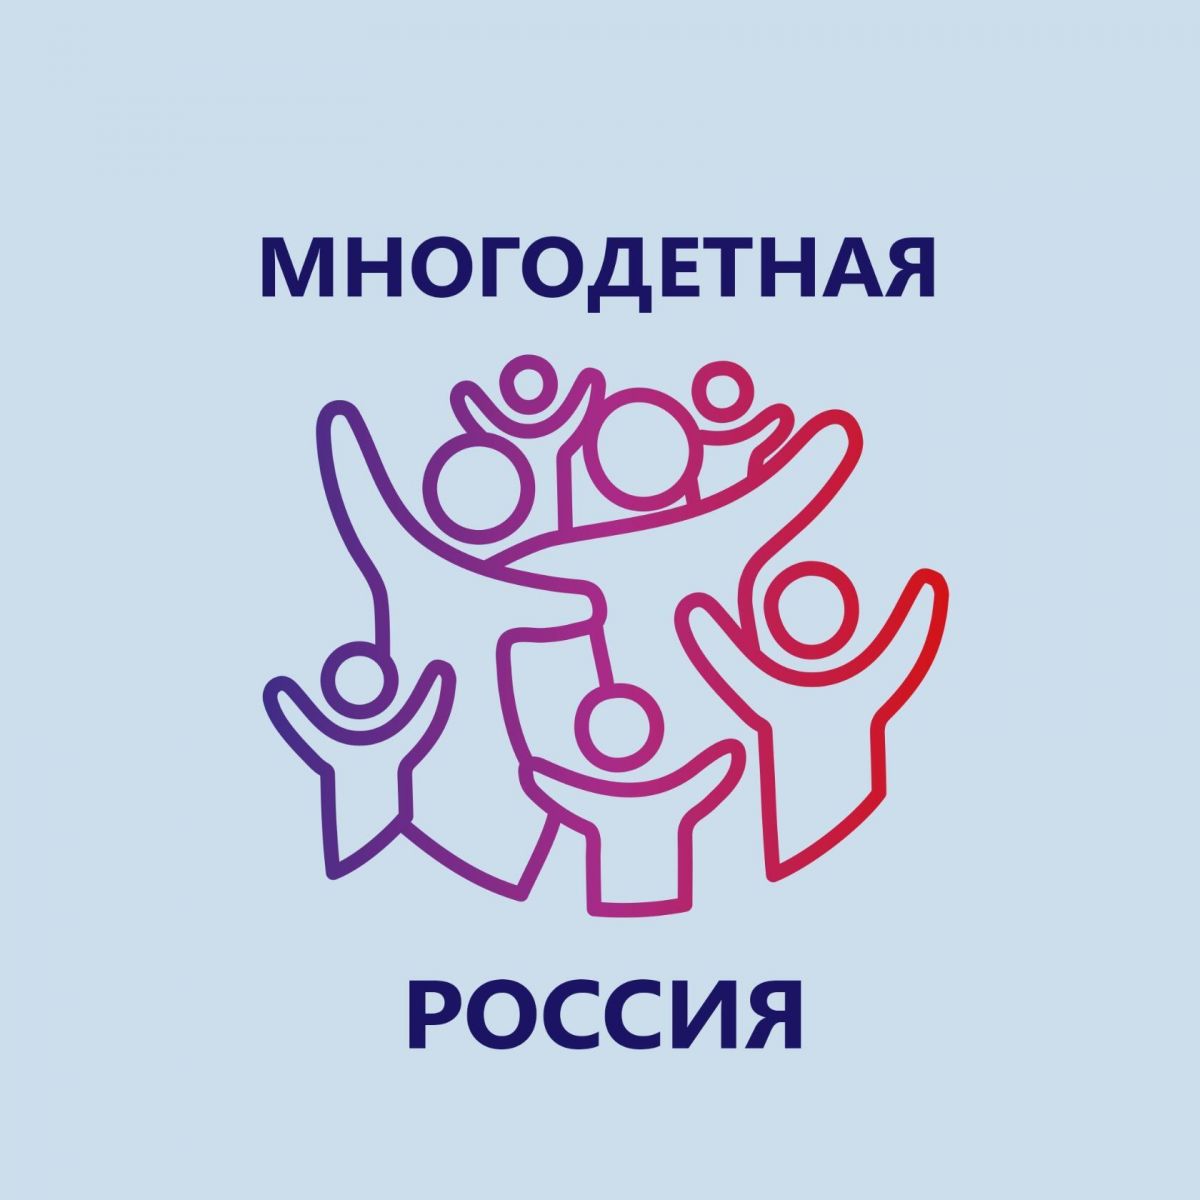 Всероссийский Форум многодетных семей «Многодетная Россия» пройдет в Москве с 15 по 16 июня 2022 года